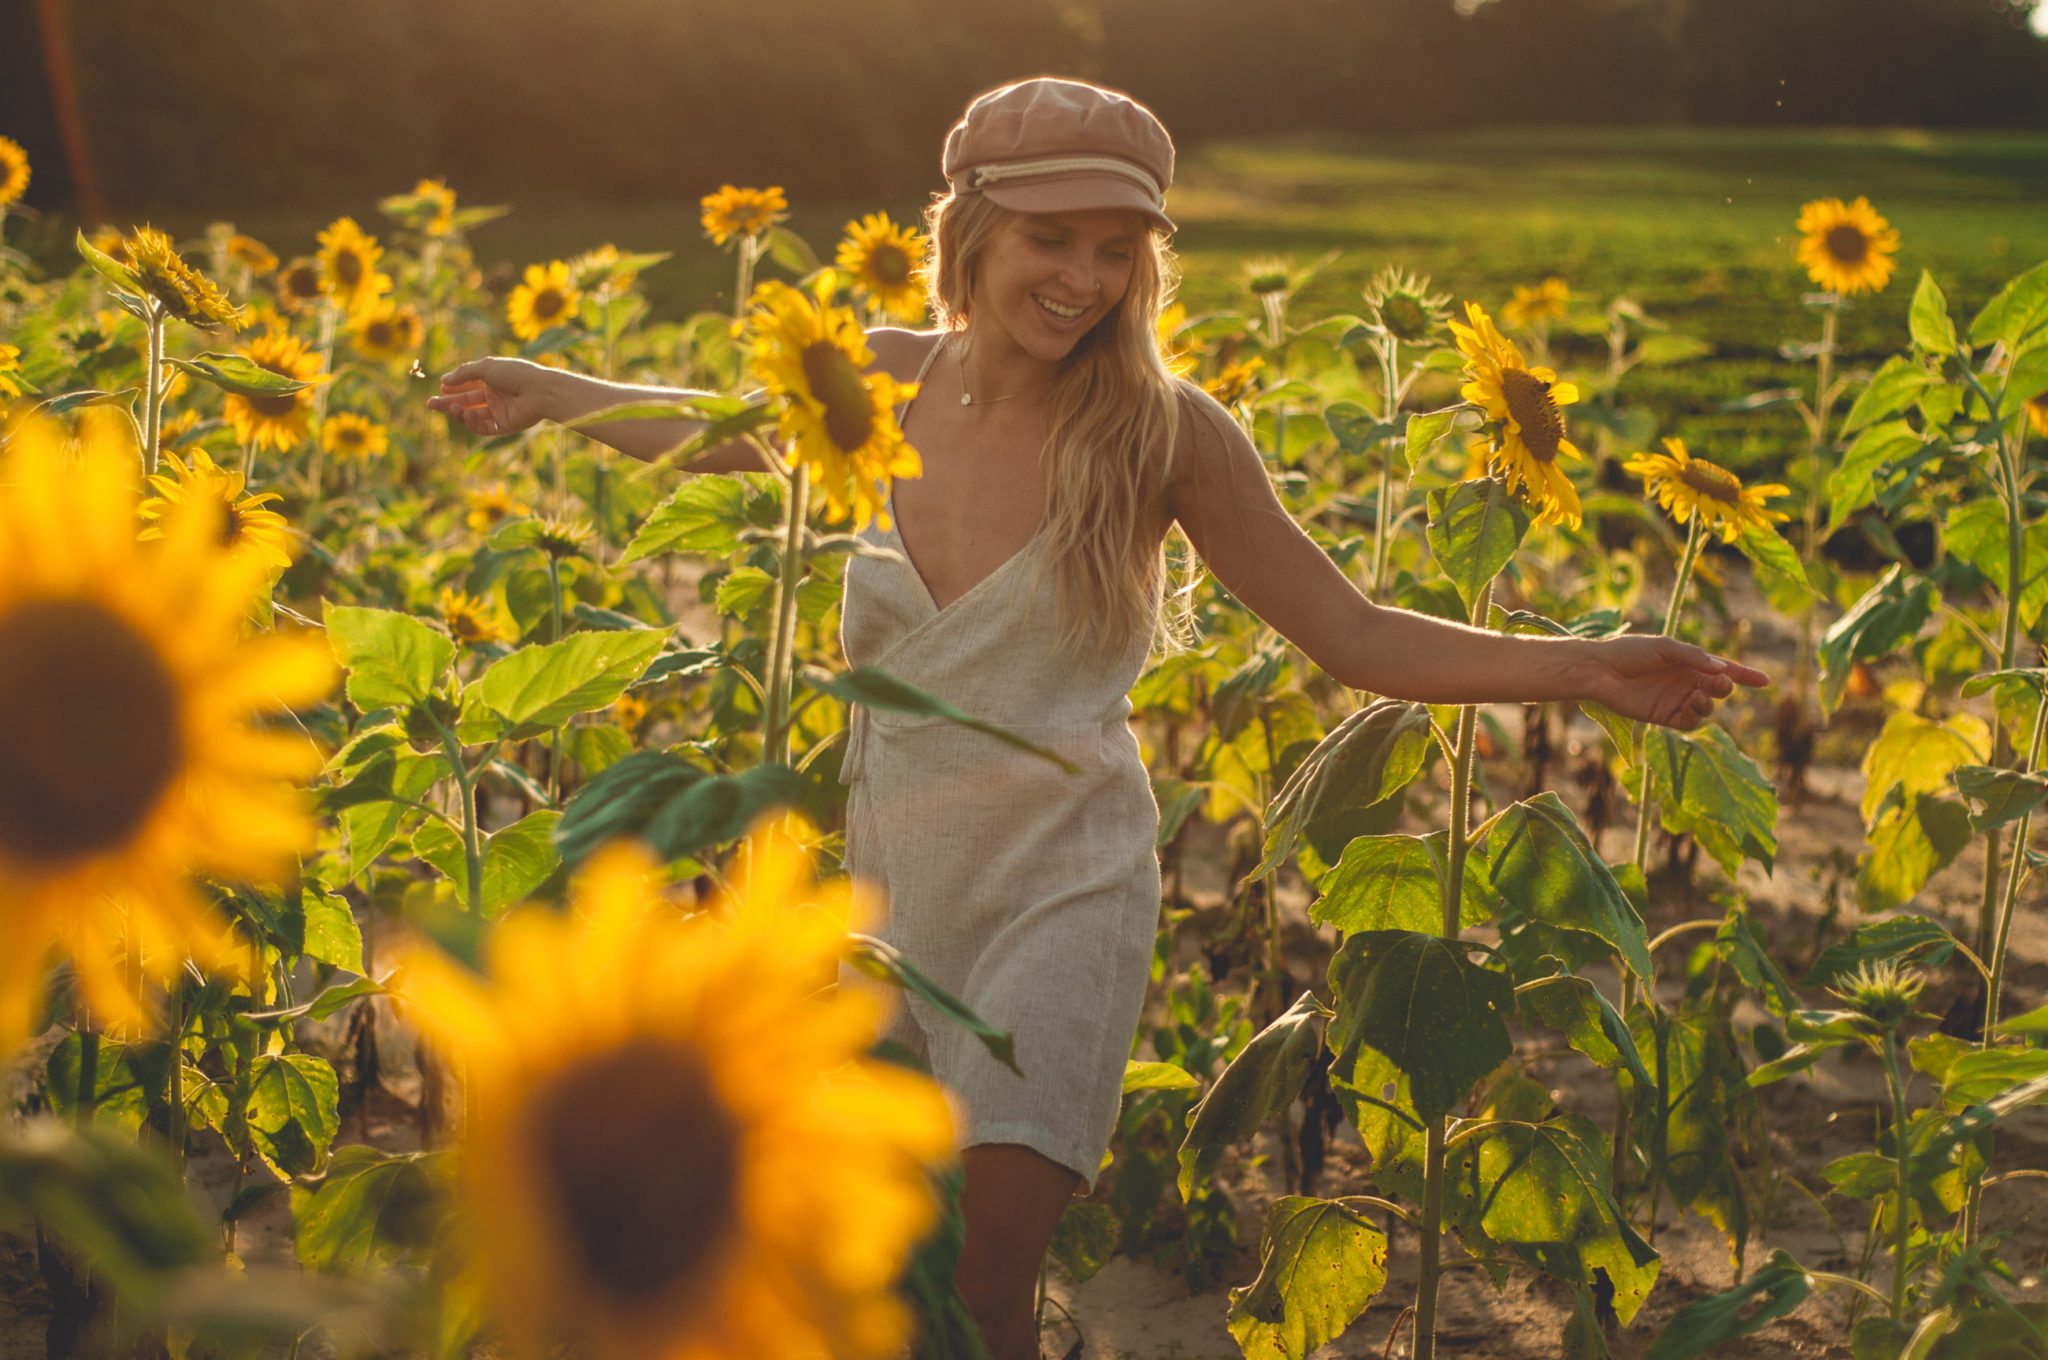 Sunflower Fields Forever | Light by Megan Rae